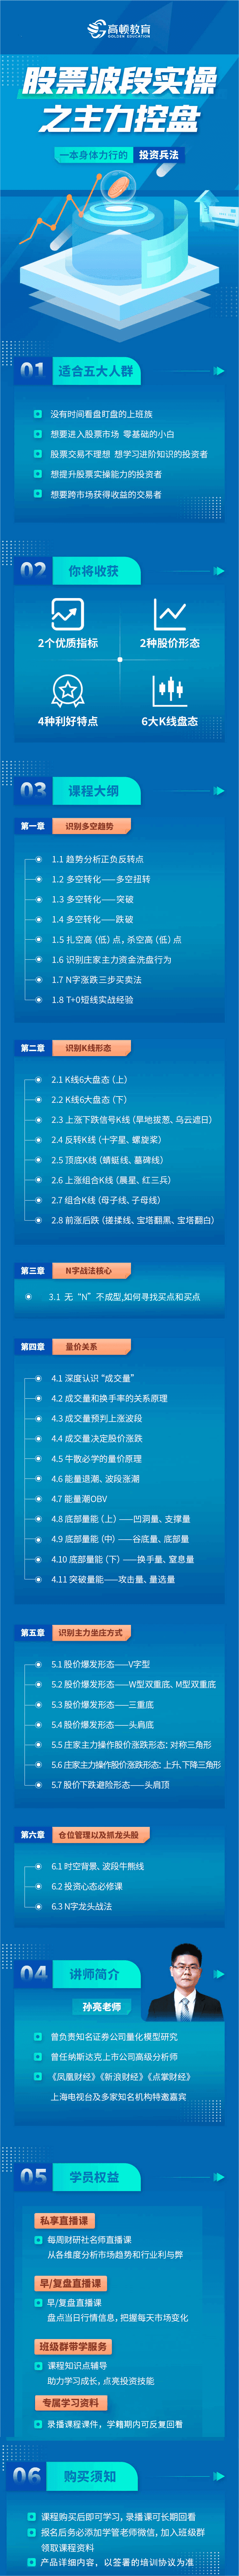 https://simg01.gaodunwangxiao.com/uploadfiles/product-center/202303/30/b80cc_20230330151039.png